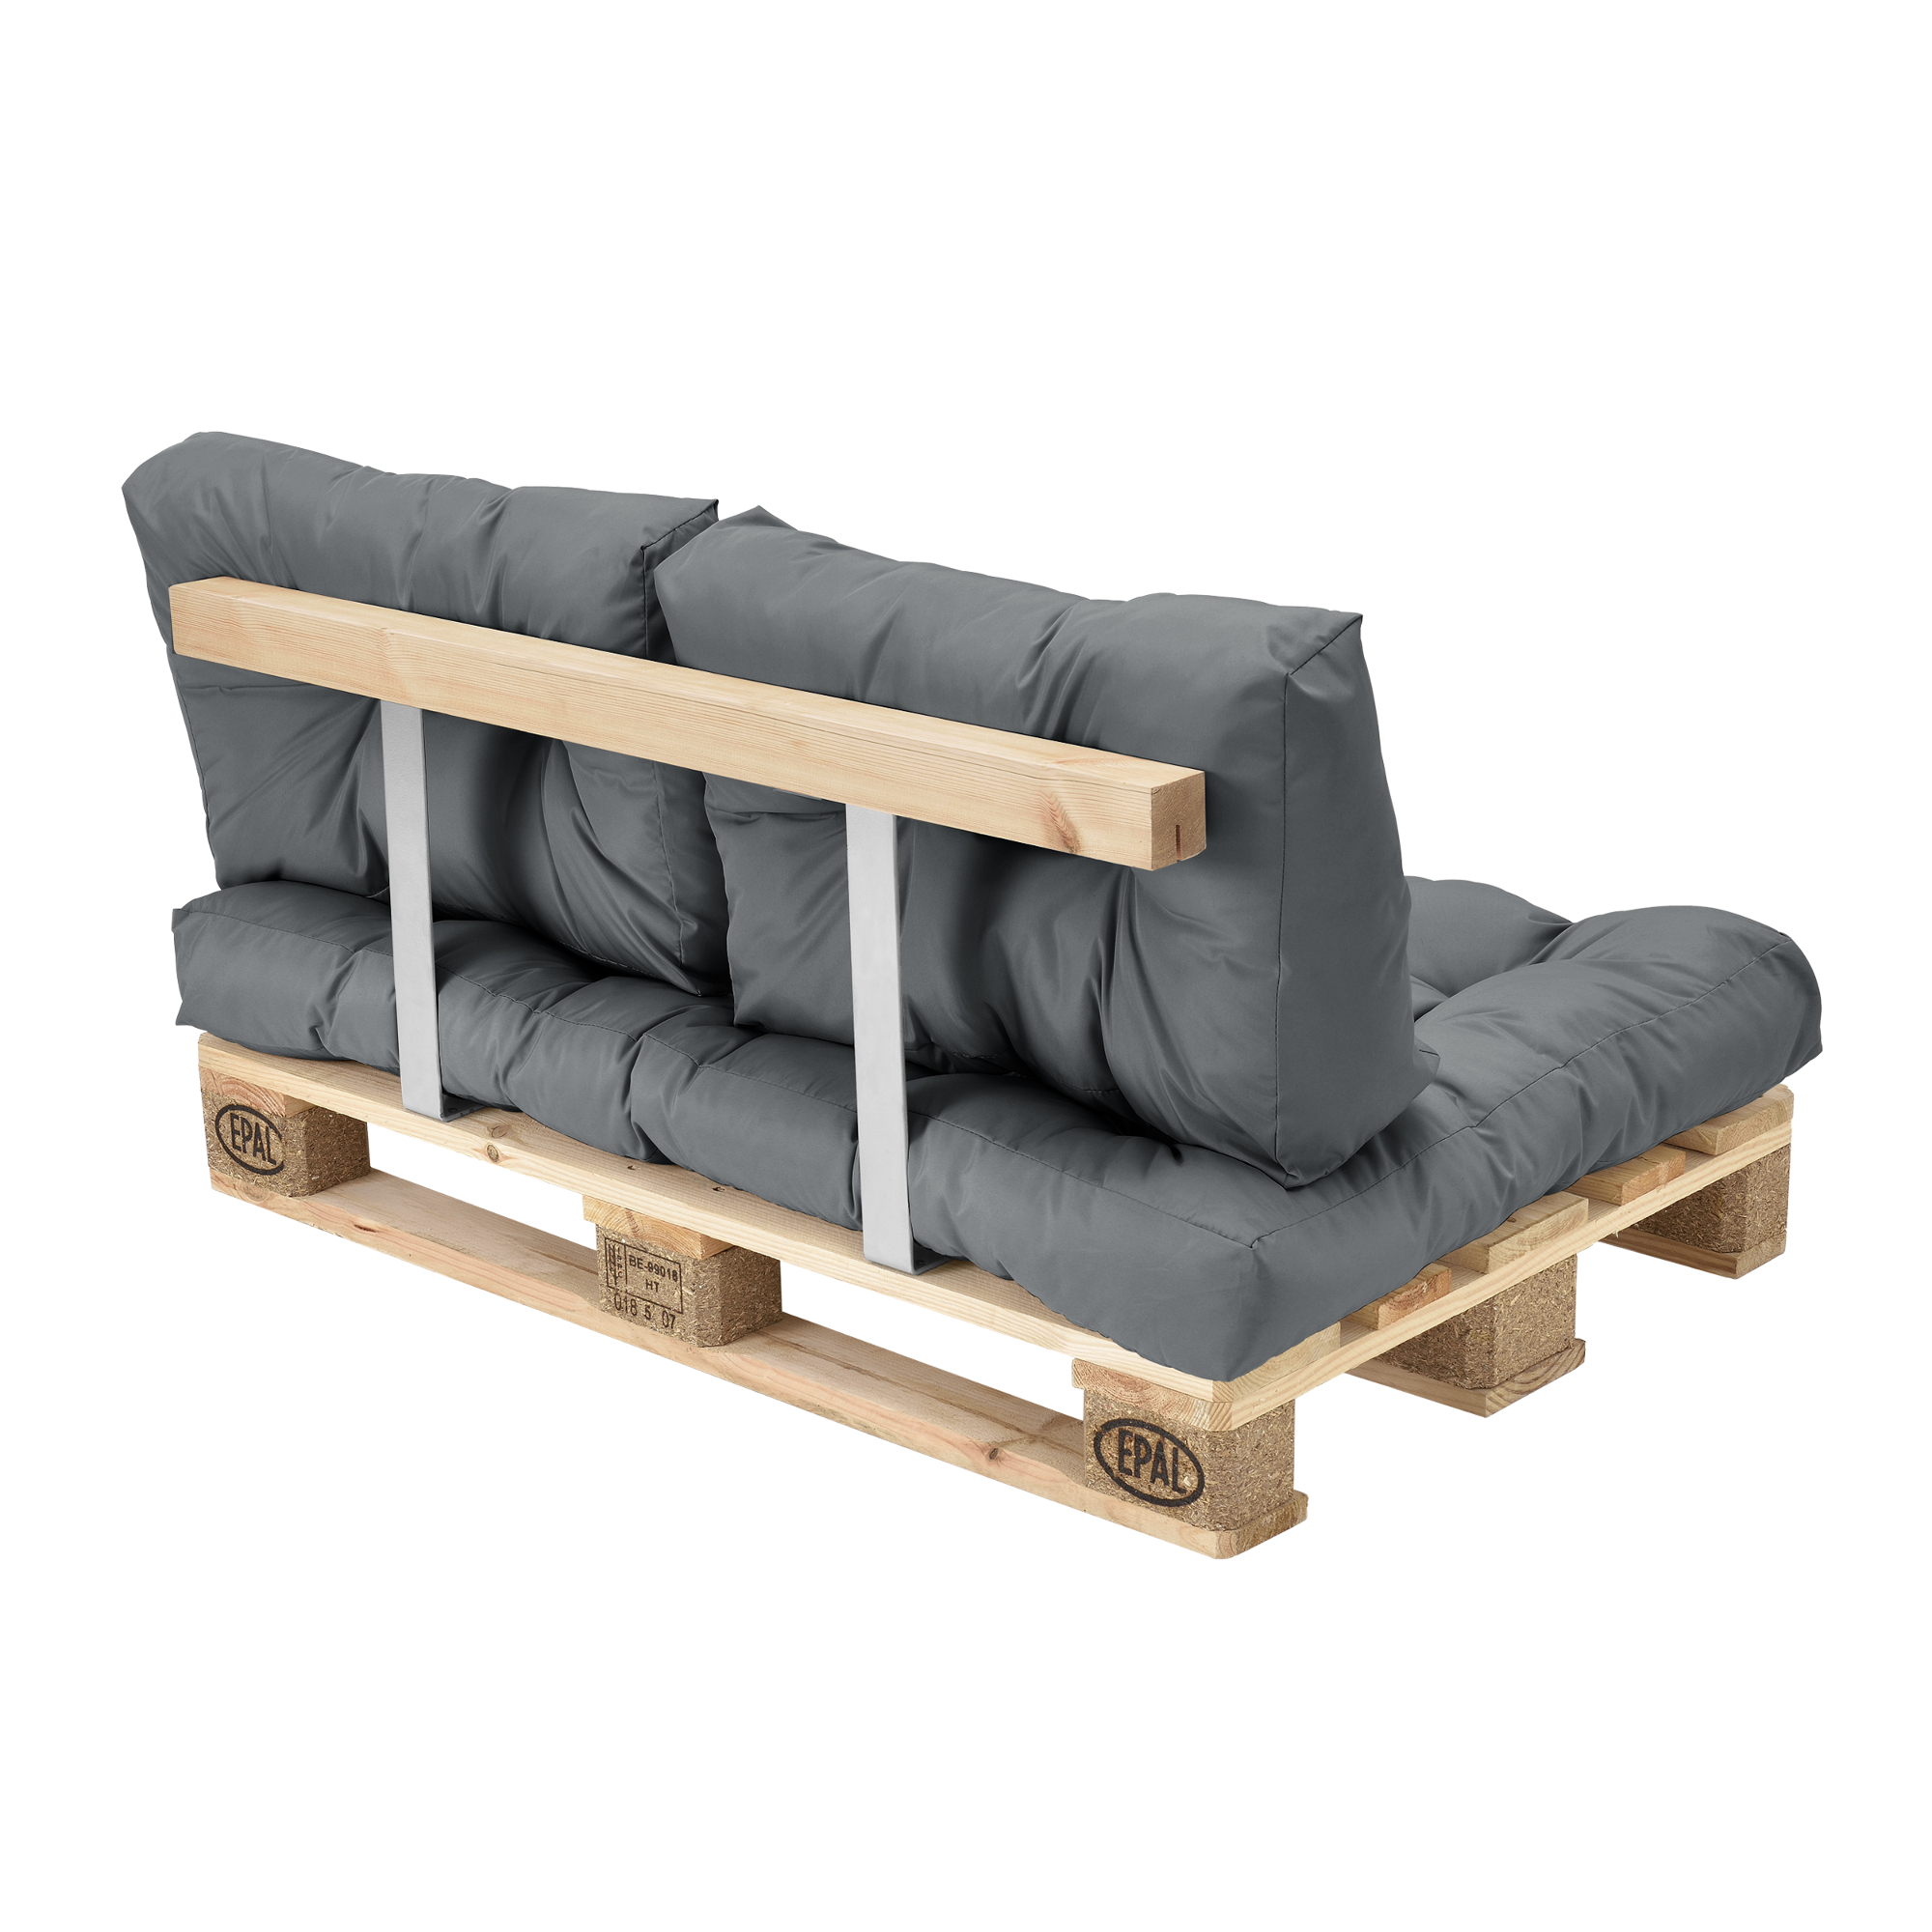 en.casa® Euro Paletten Sofa Grau 2-Sitzer mit Paletten Polster Kissen Lehnen 